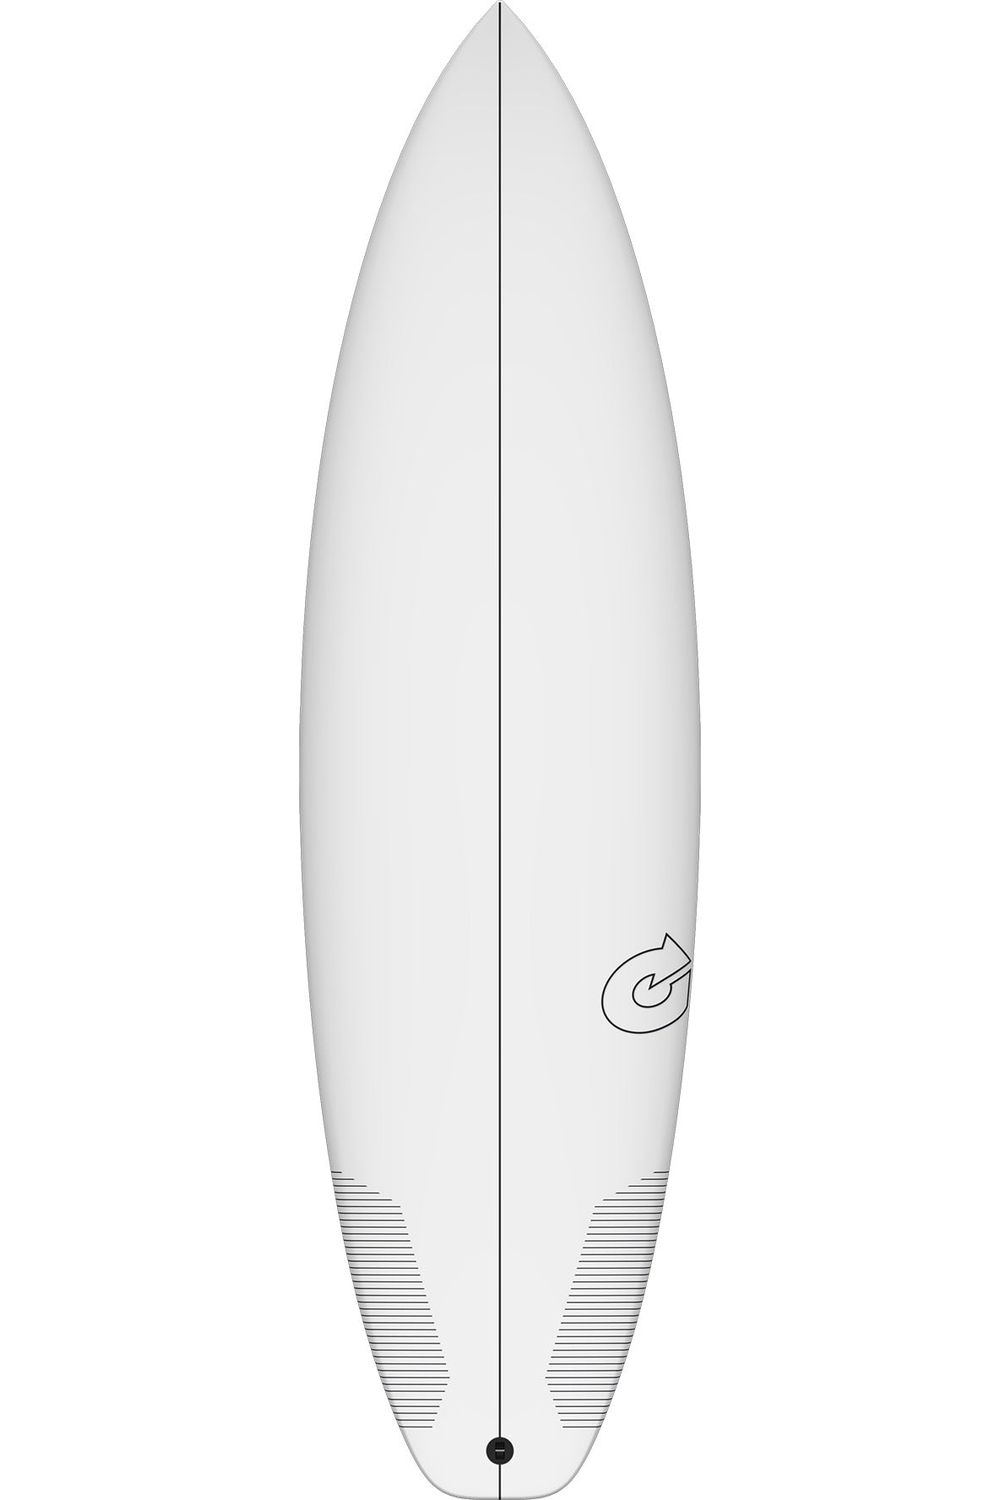 Torq TEC Comp 2 Surfboard White